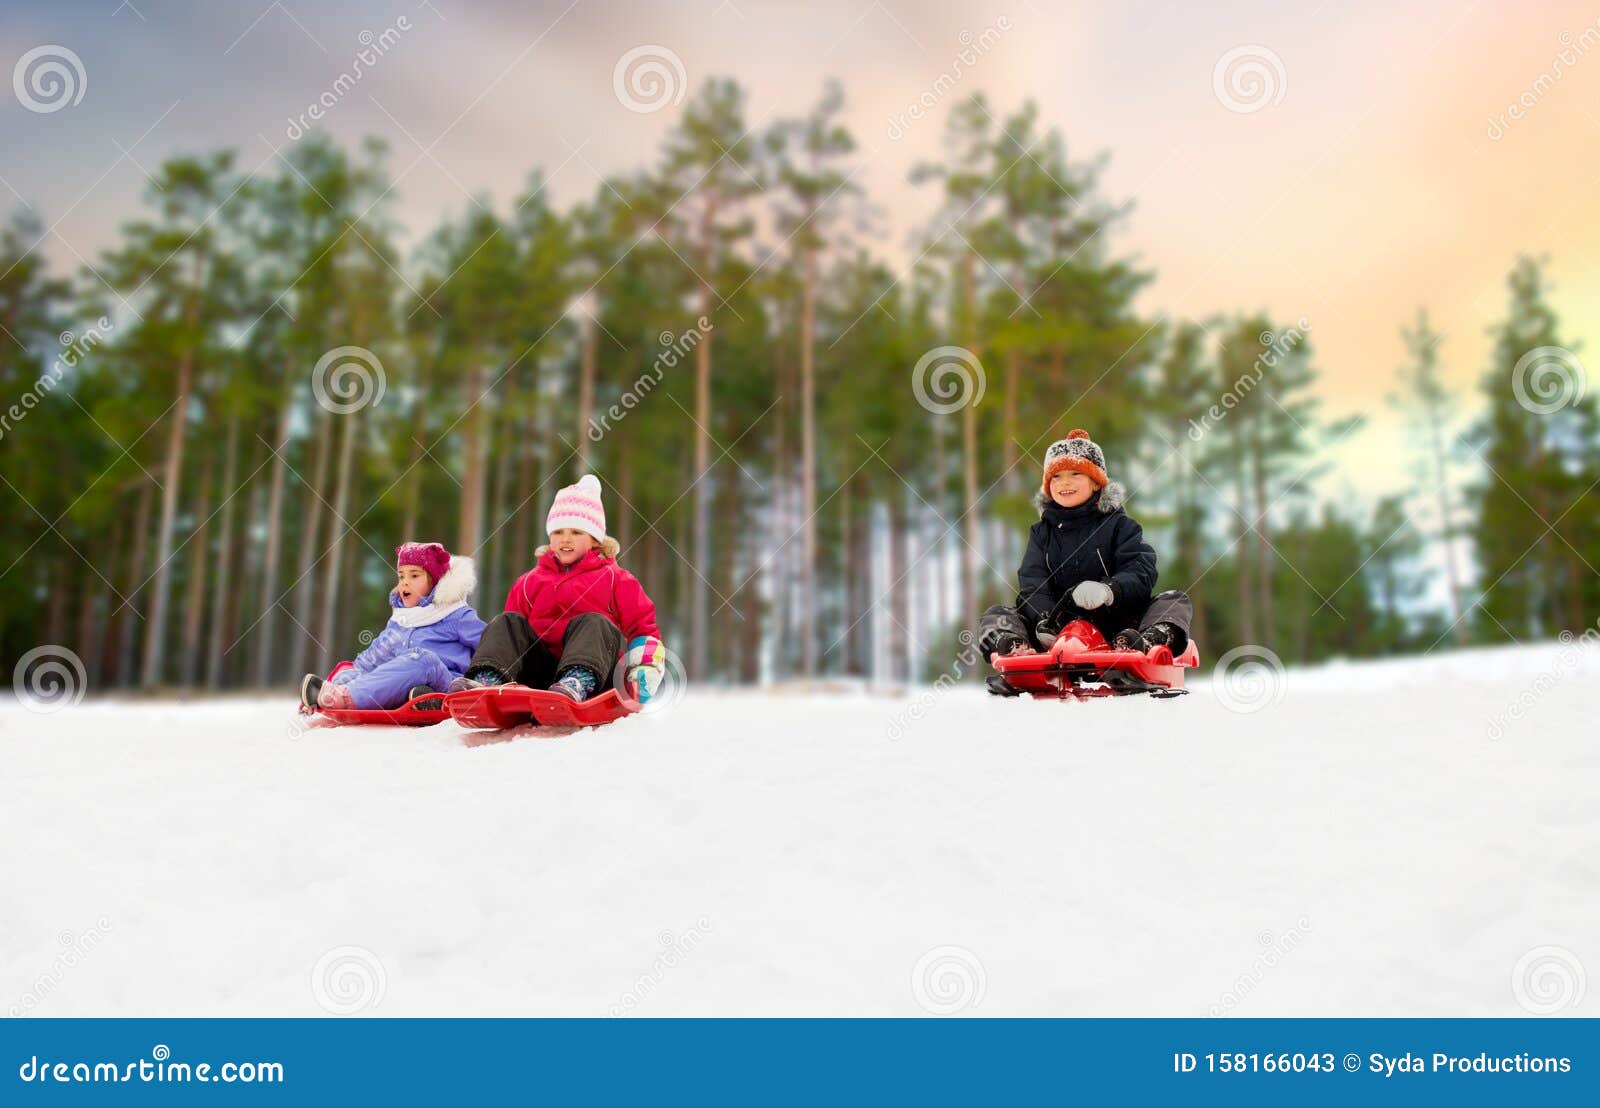 去下来从多雪的小山的小滑雪者 库存照片. 图片 包括有 乐趣, 童年, 蓝色, 活动家, 少许, 休闲, 男朋友 - 44034774